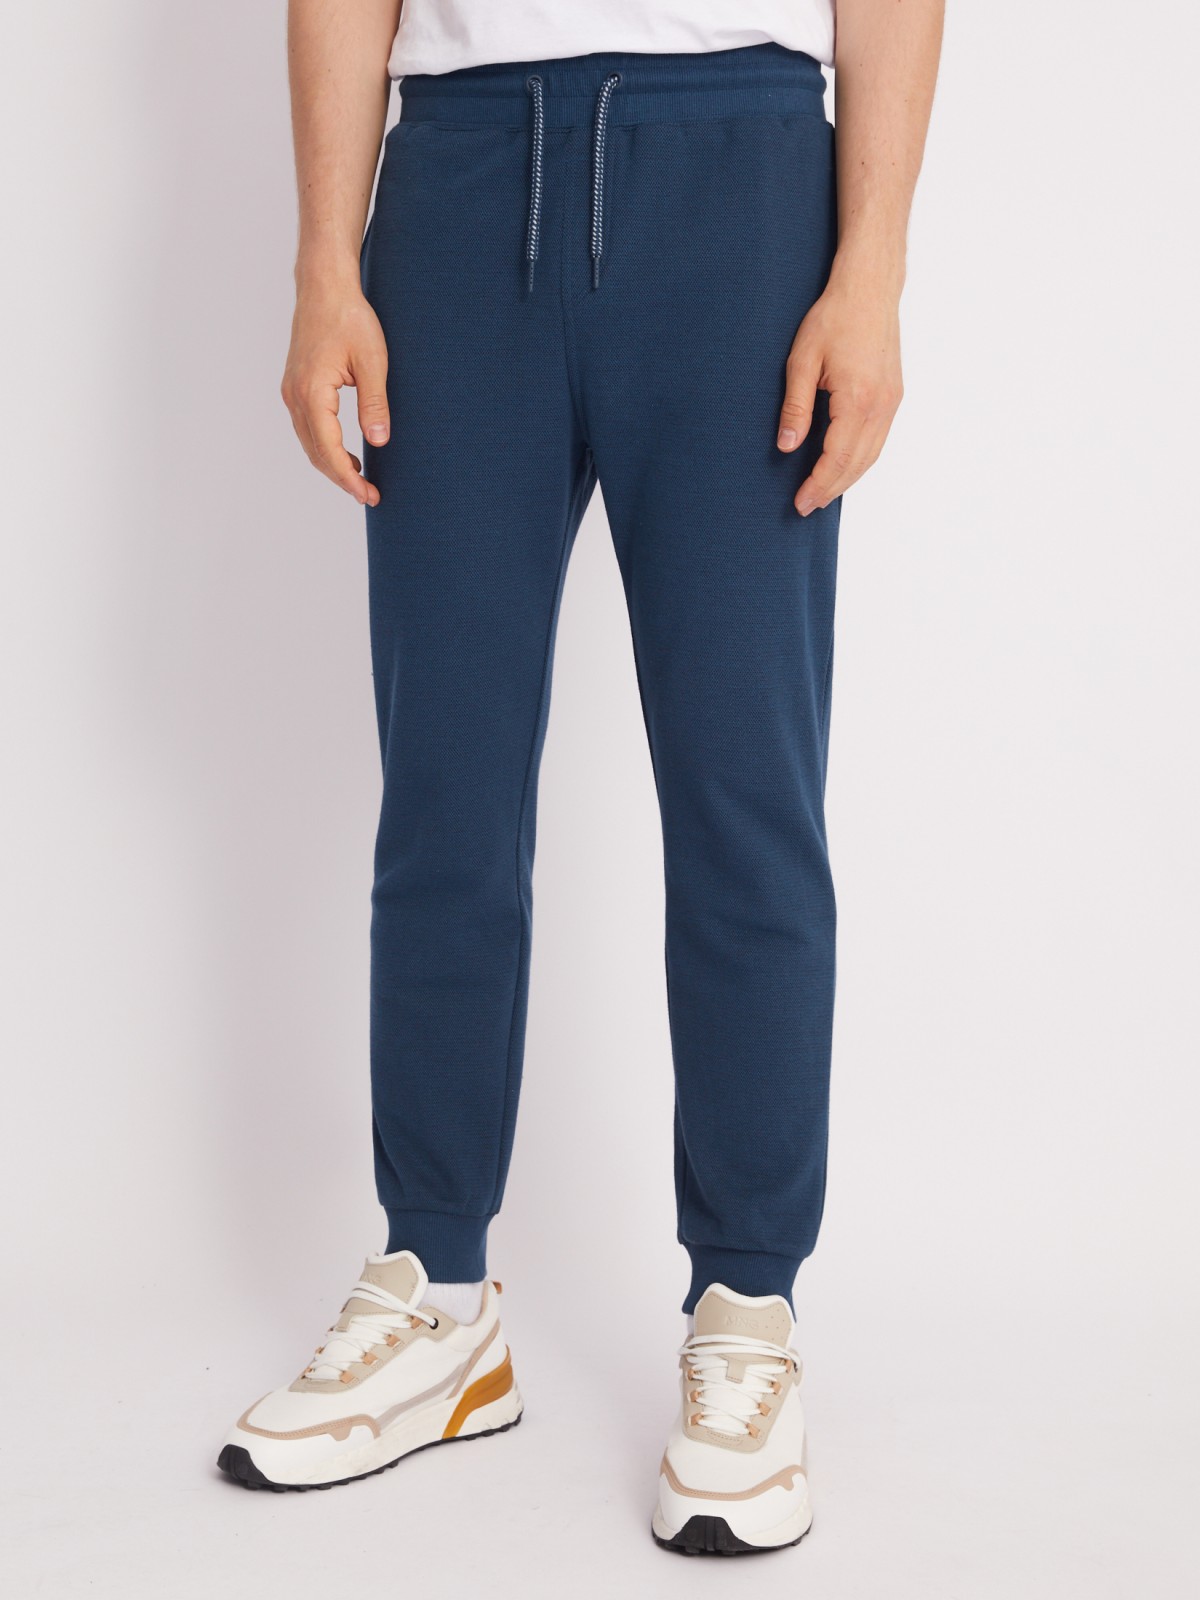 Трикотажные брюки-джоггеры в спортивном стиле zolla 21331762F012, цвет бирюзовый, размер S - фото 2